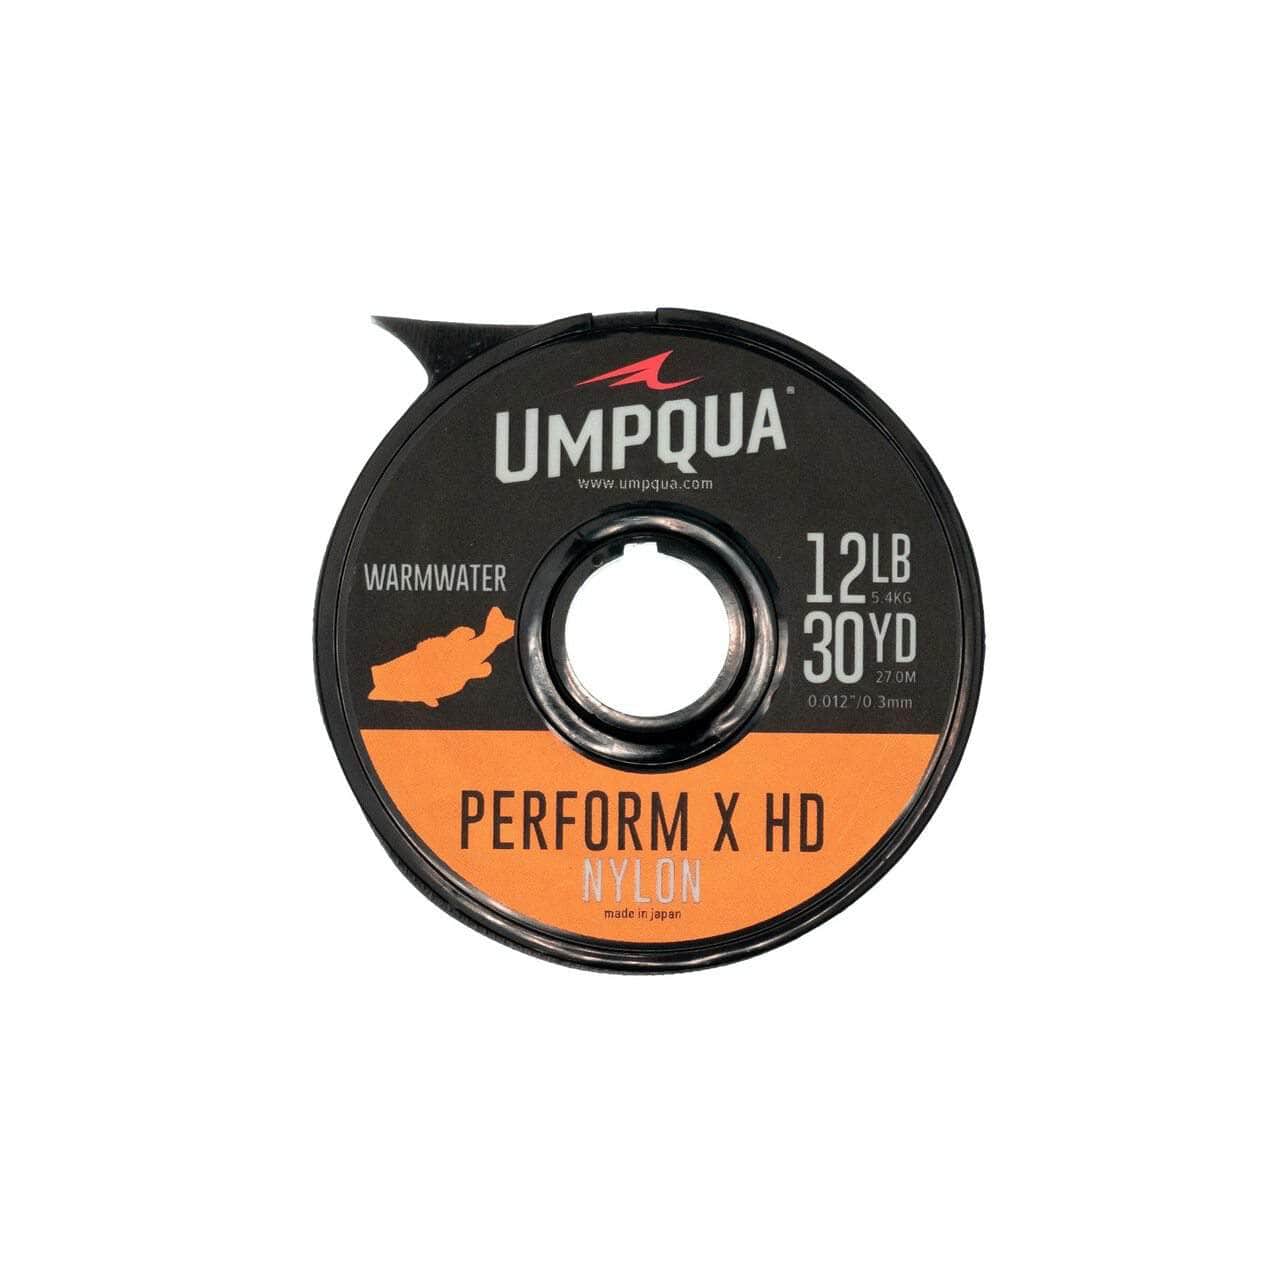 Umpqua Perform X HD Nylon Warmwater